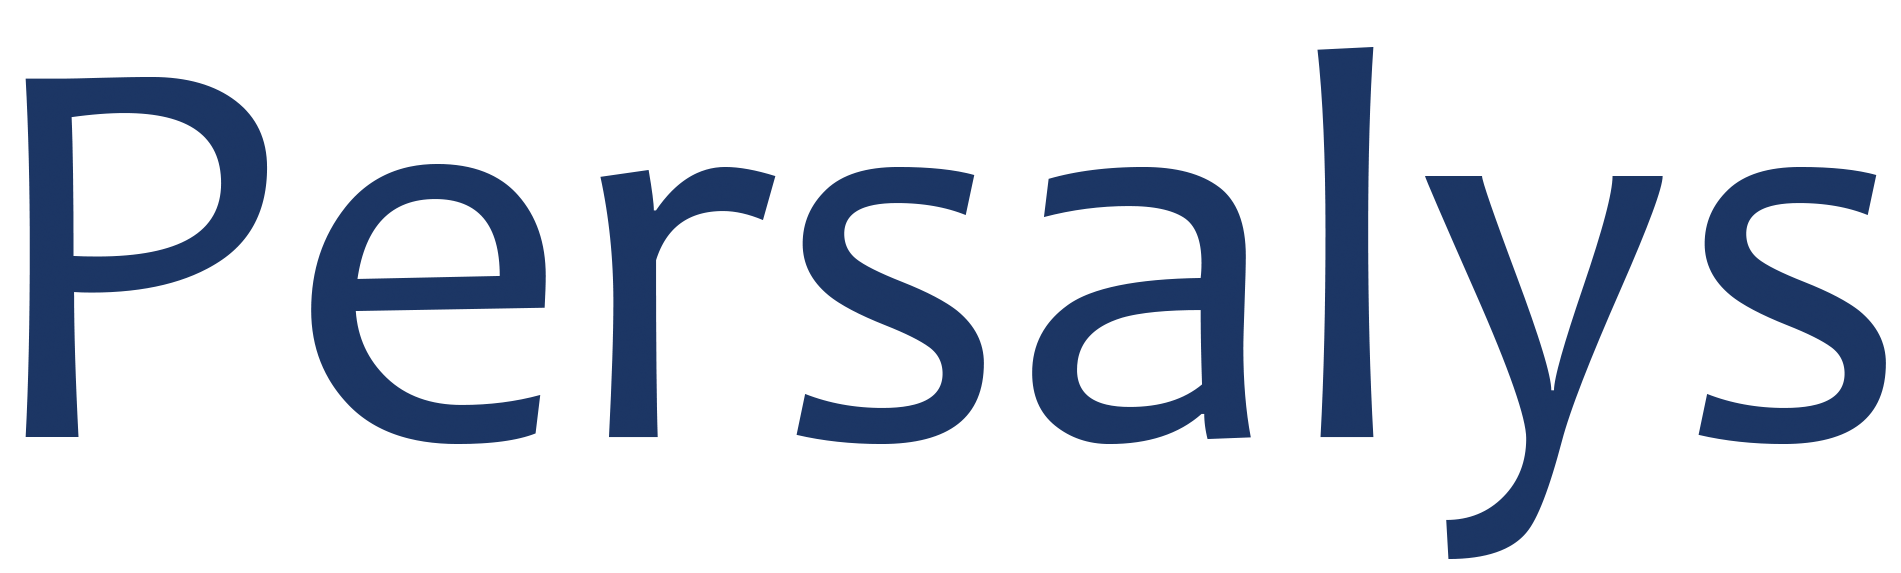 logo Persalys